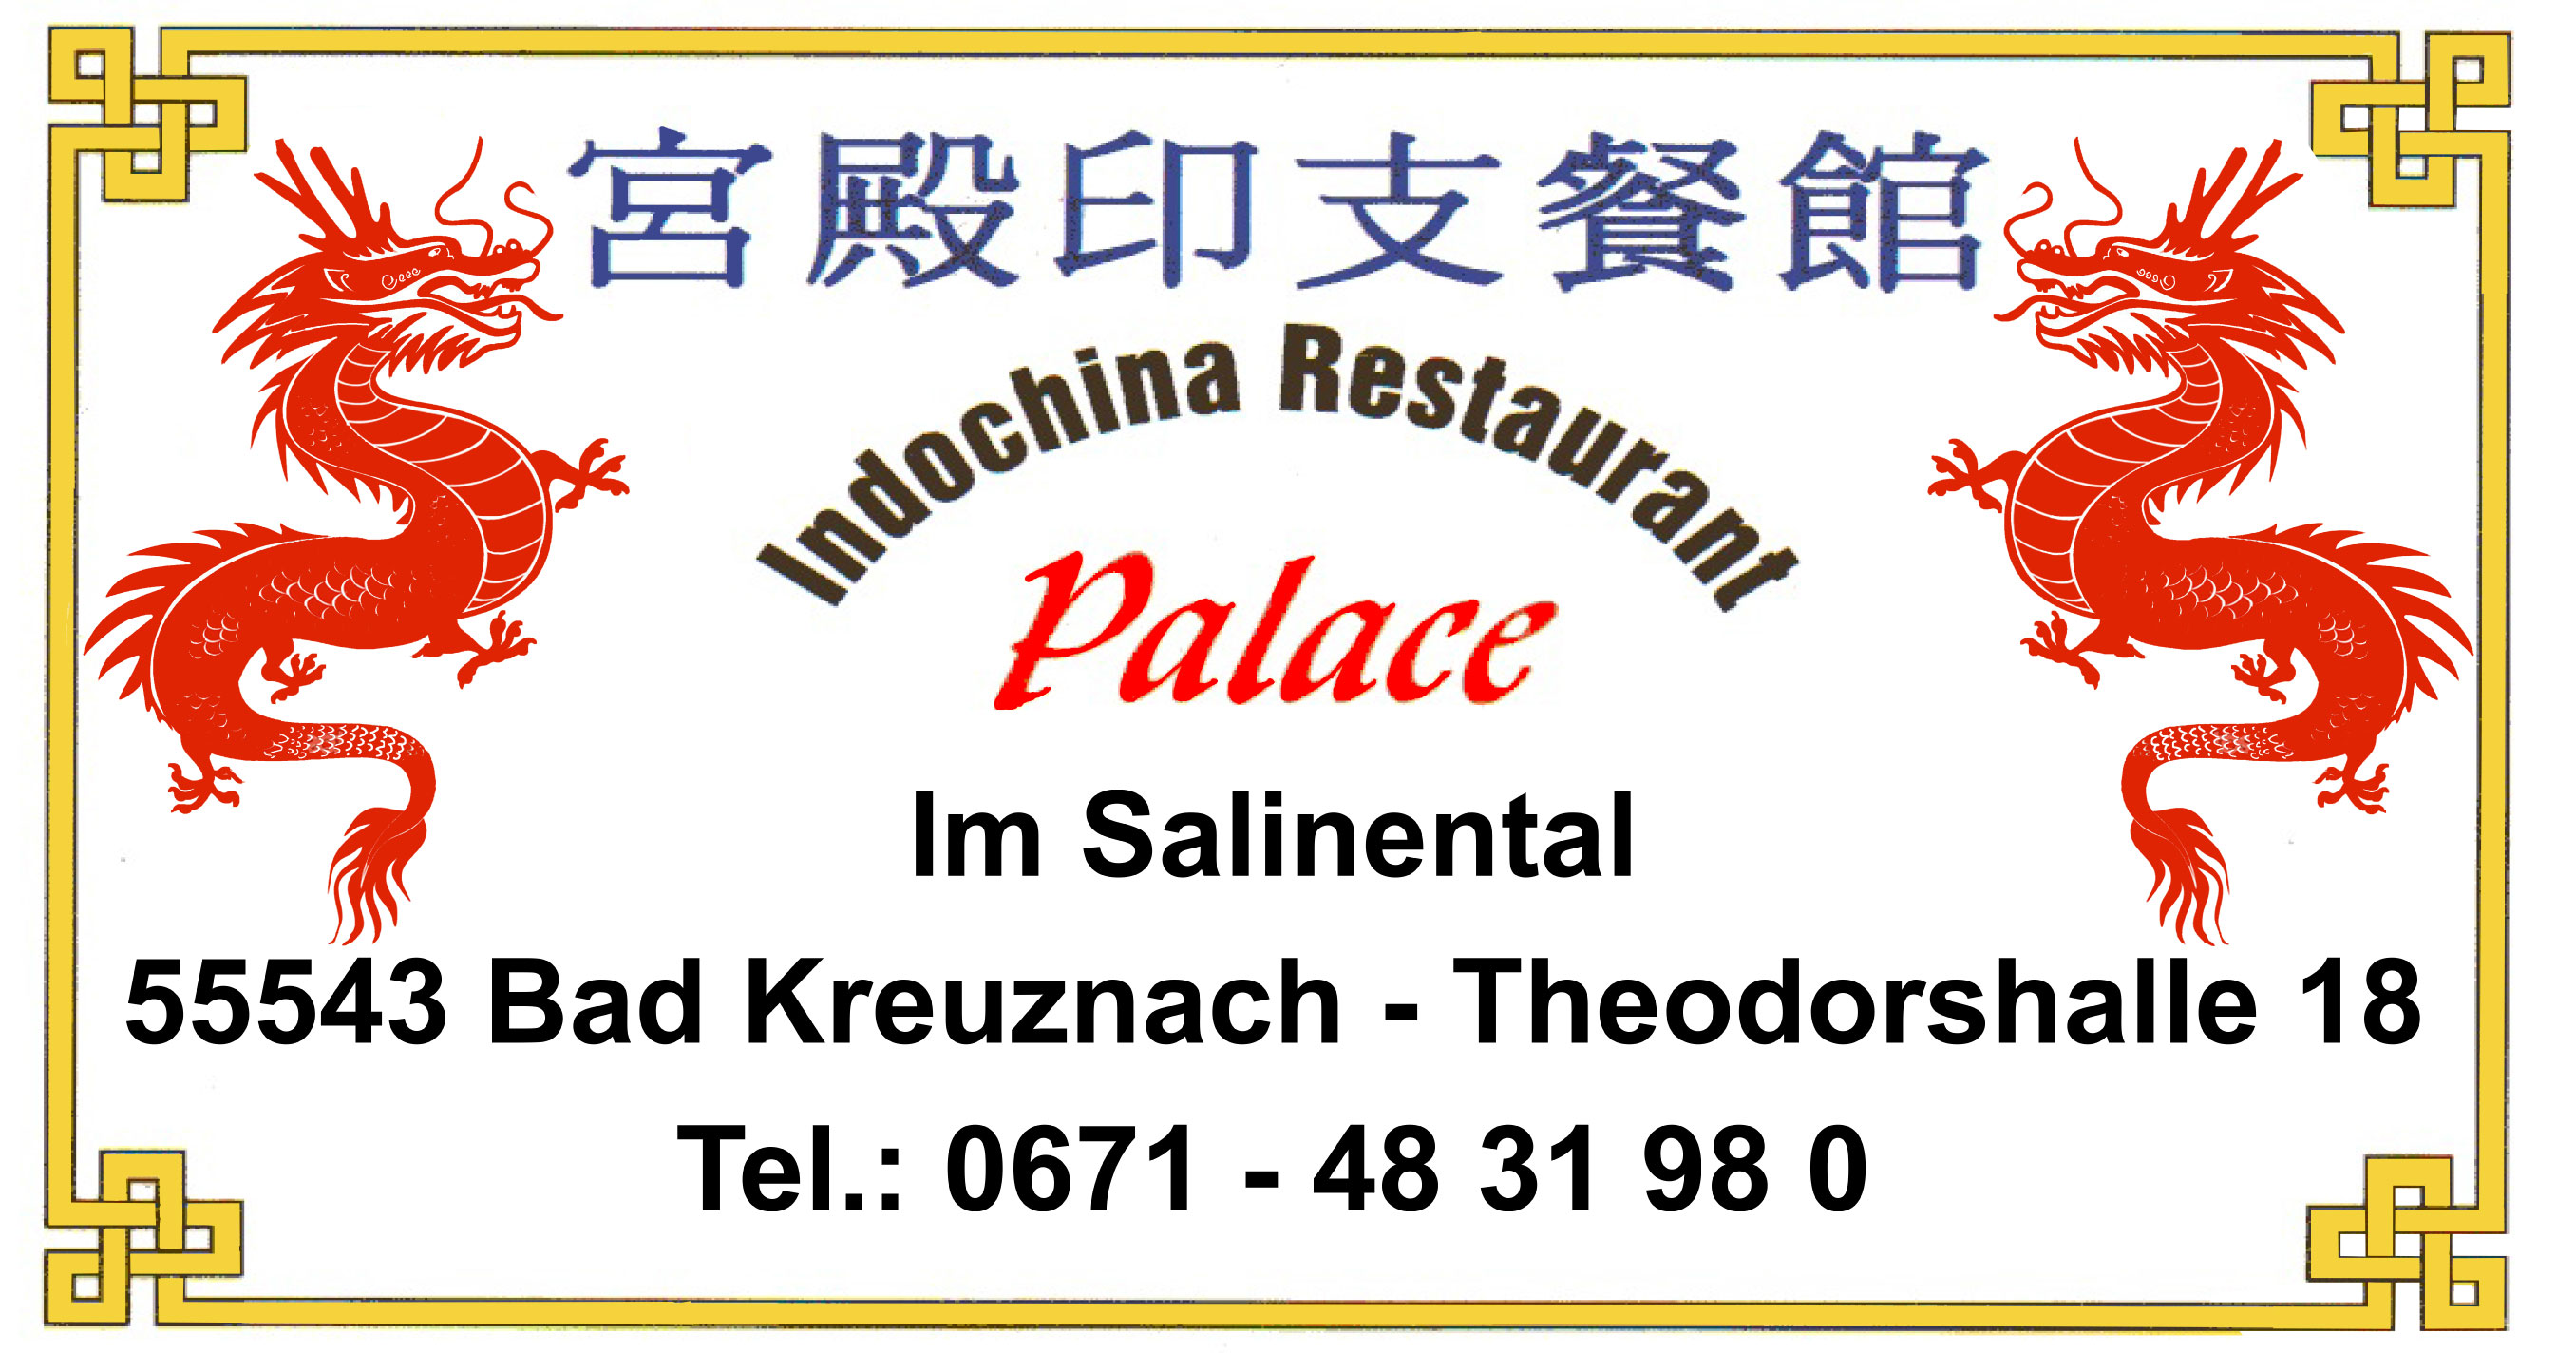 Restaurant Indochina Palace